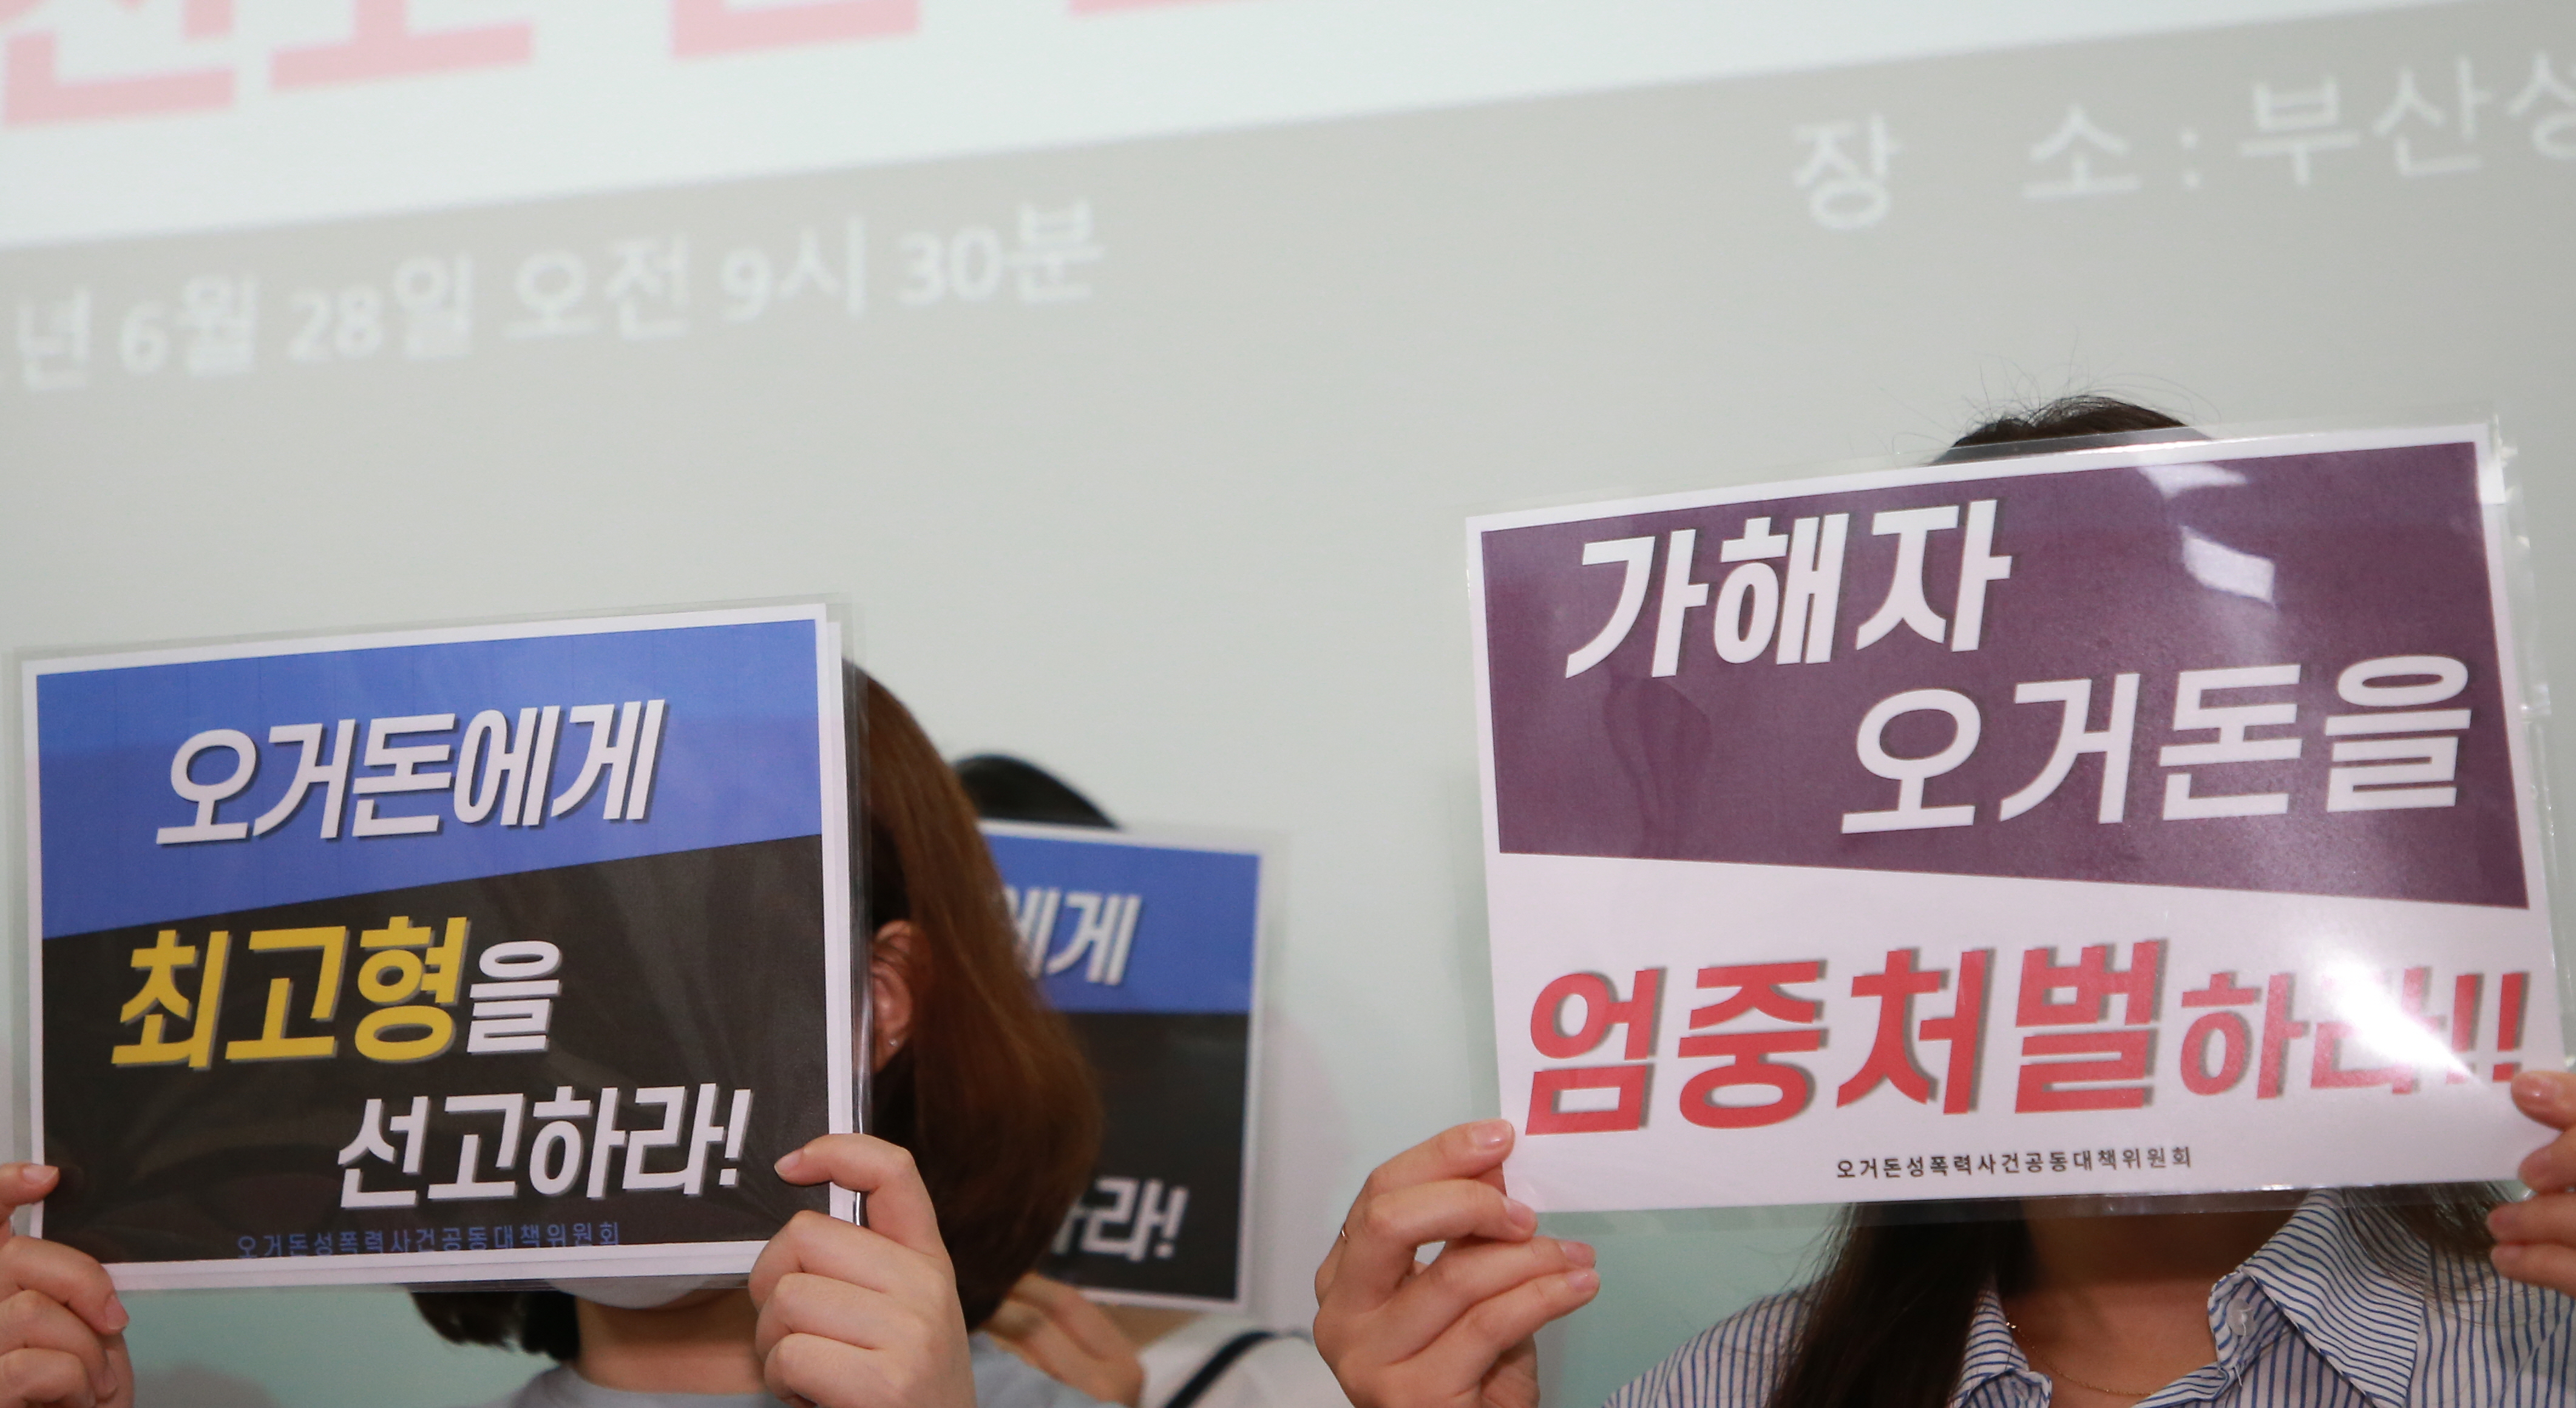 28일 오전 부산성폭력상담소에서 열린 기자회견에서 여성단체는 오거돈 전 부산시장의 엄벌을 촉구했다.